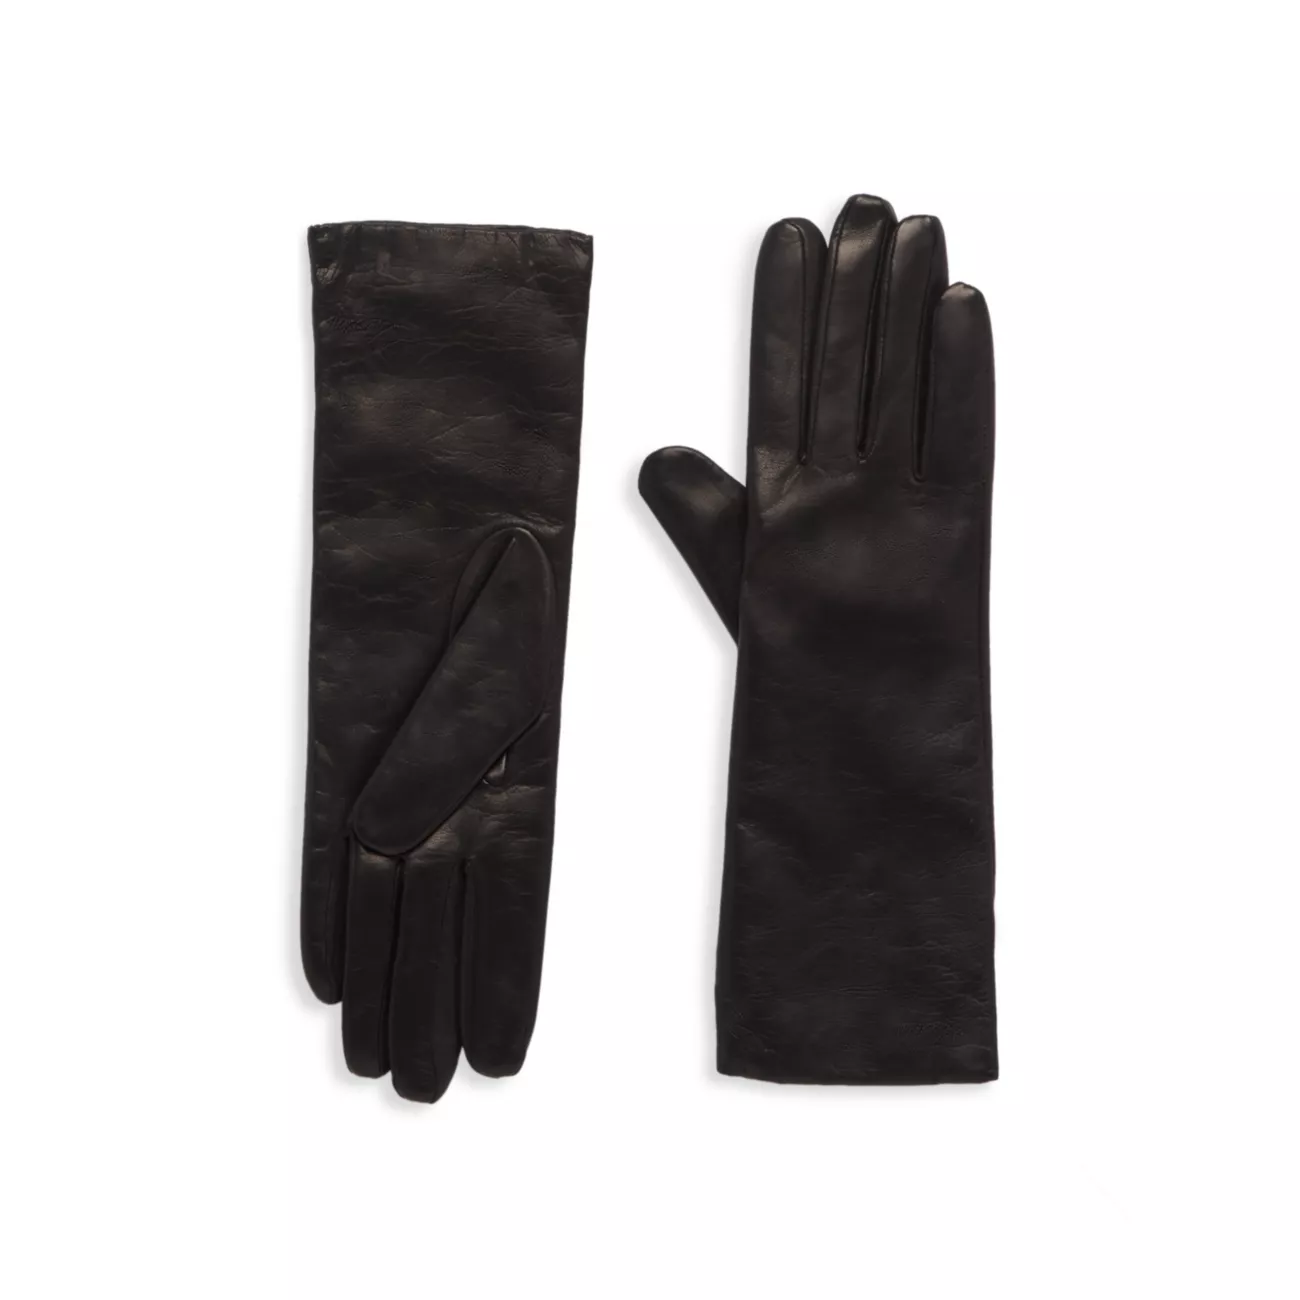 КОЛЛЕКЦИЯ Кожаные перчатки на кашемировой подкладке Saks Fifth Avenue